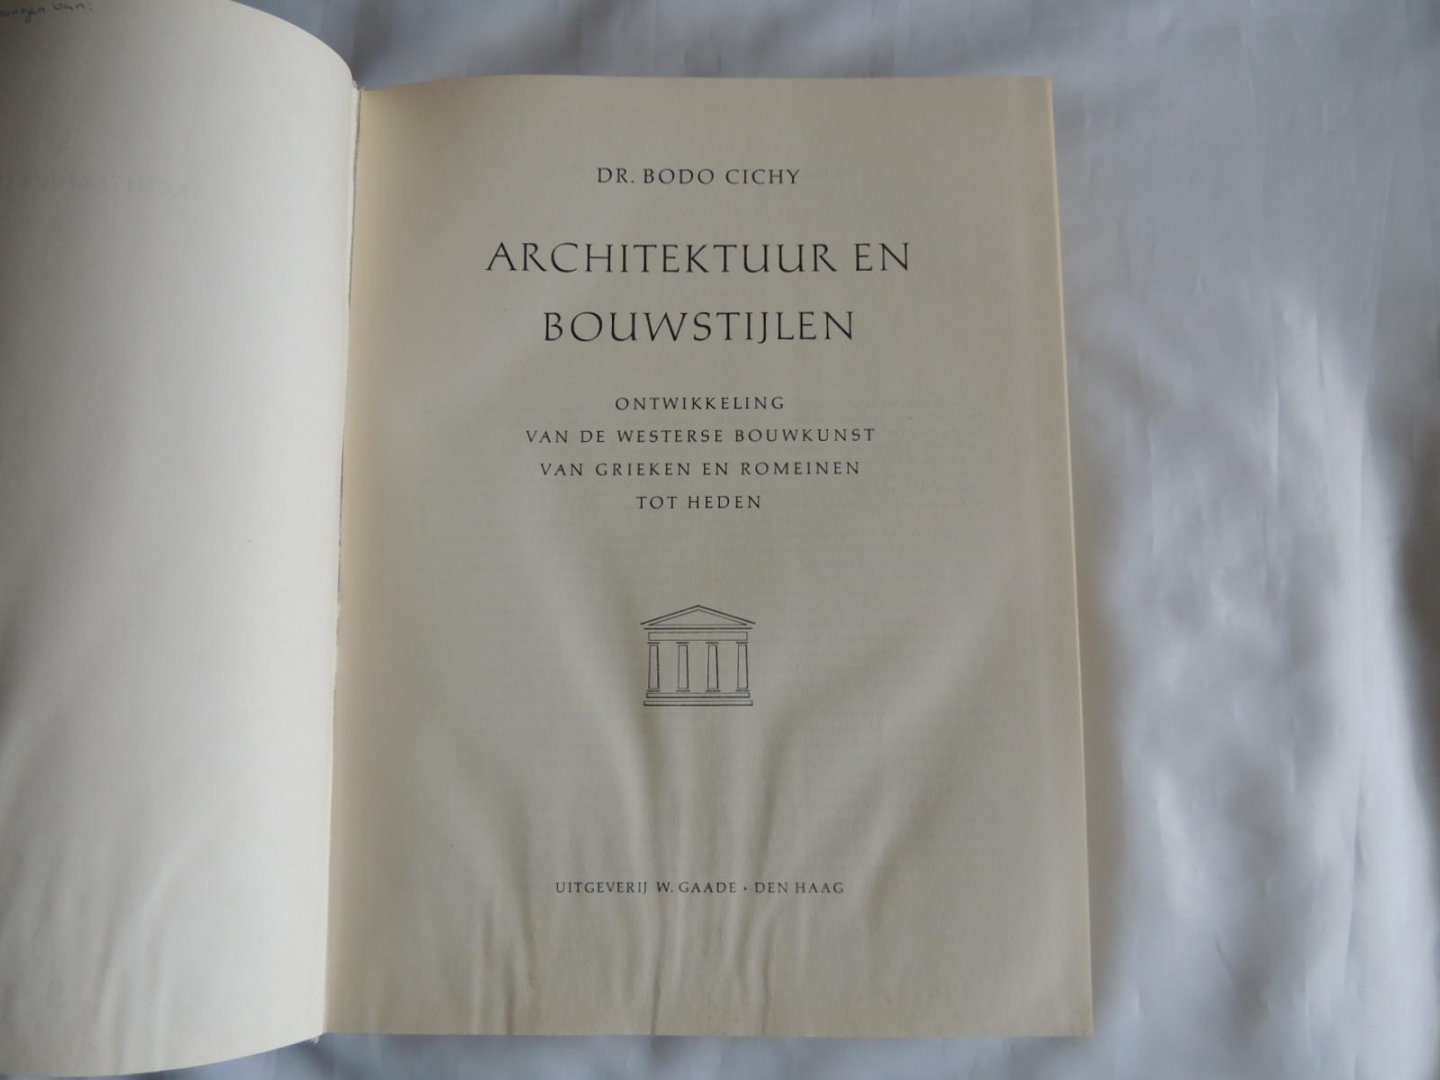 Bodo Cichy , Dr. - Architektuur en bouwstijlen : Ontwikkeling van de westerse bouwkunst van Grieken en Romeinen tot heden